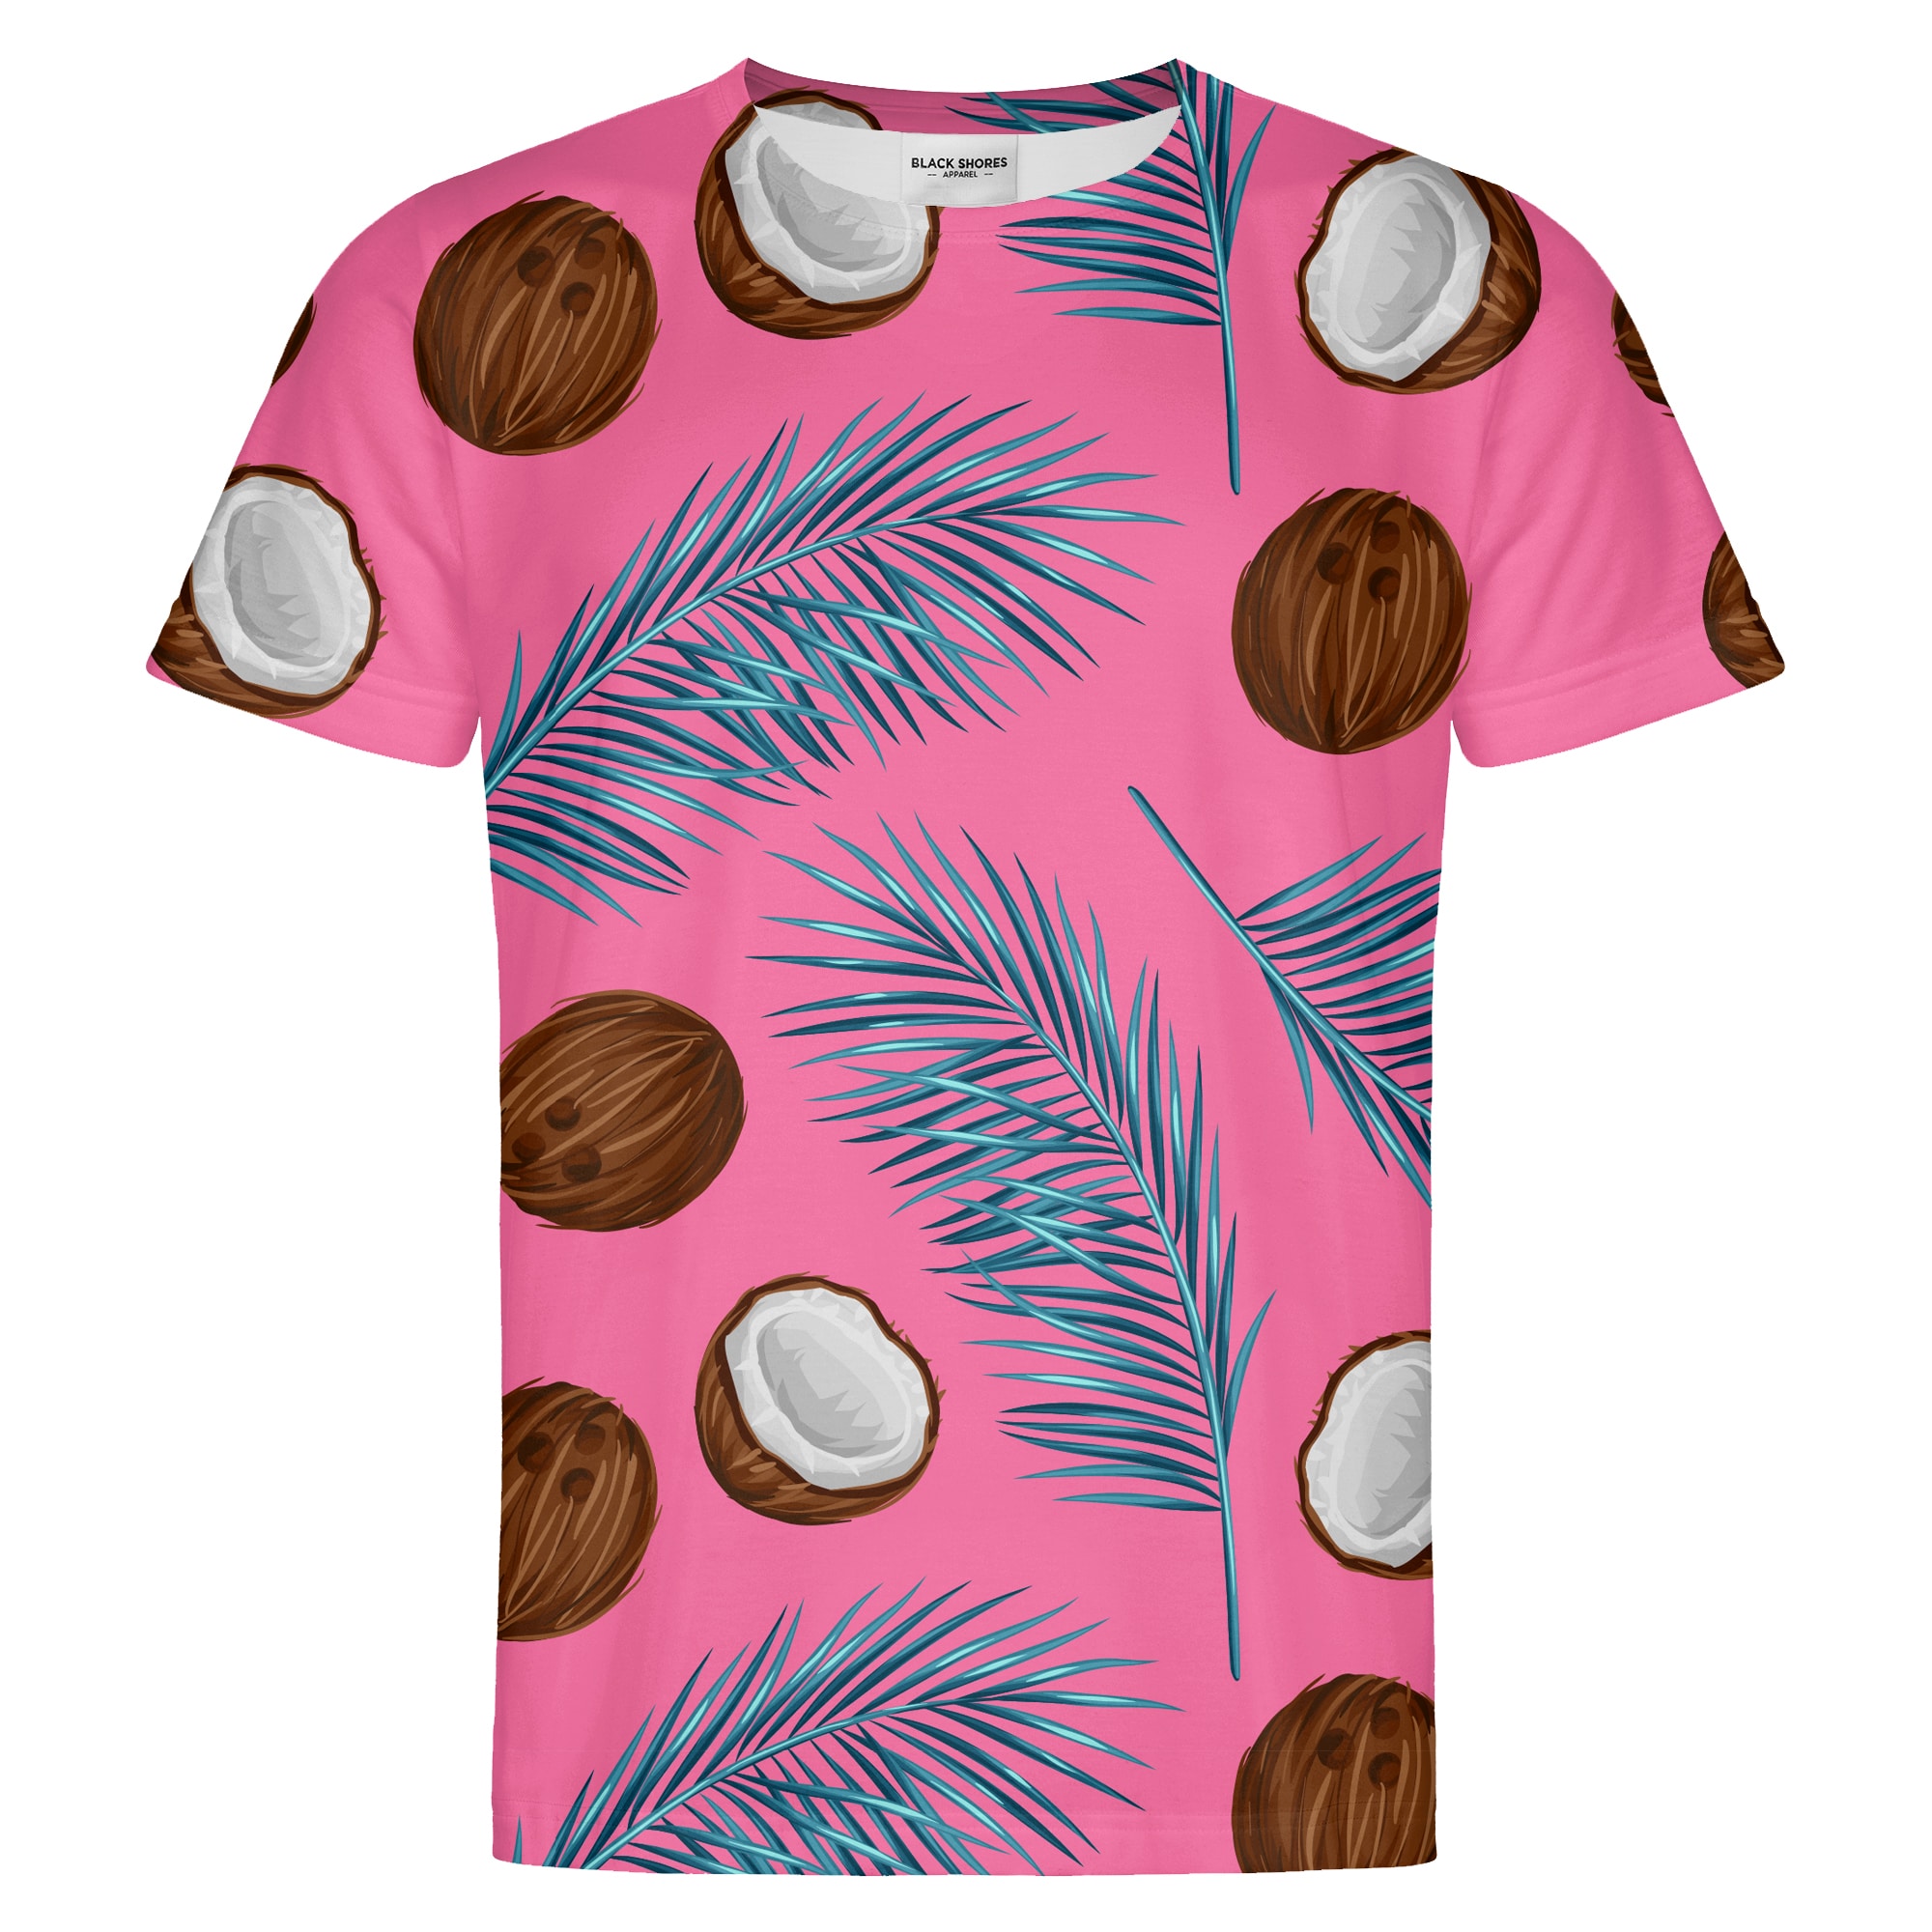 Coconuts T-shirt – Black Shores - L